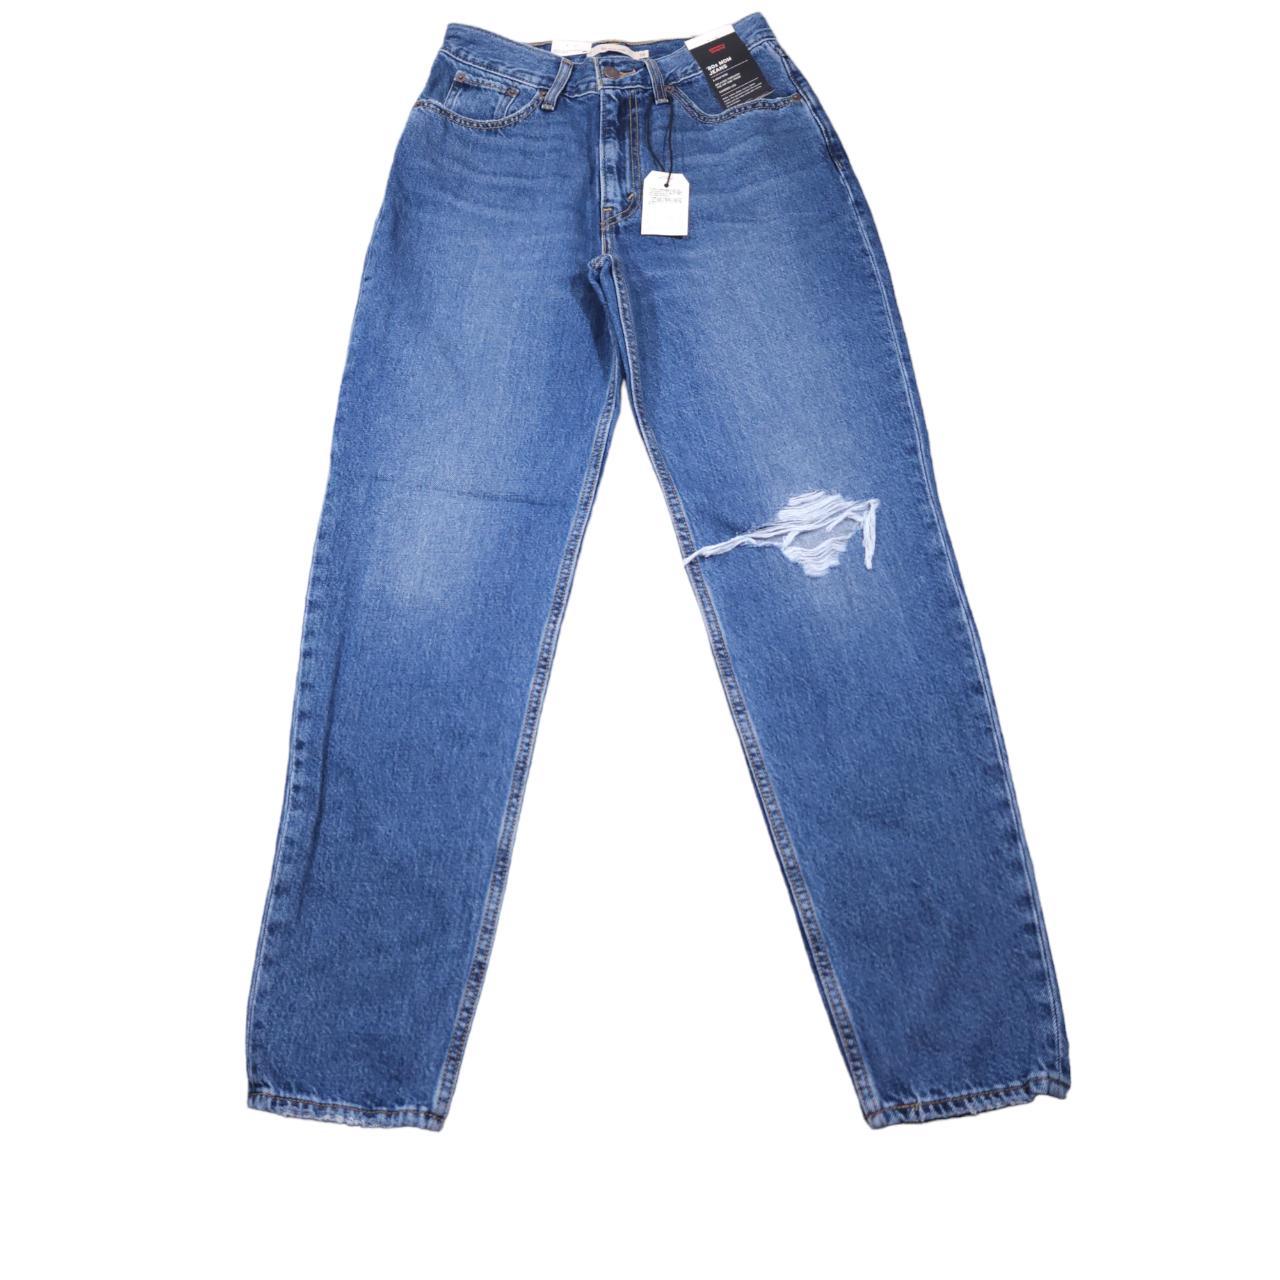 Women's Levi's Premium 80s Mom Jeans in medium wash - Depop